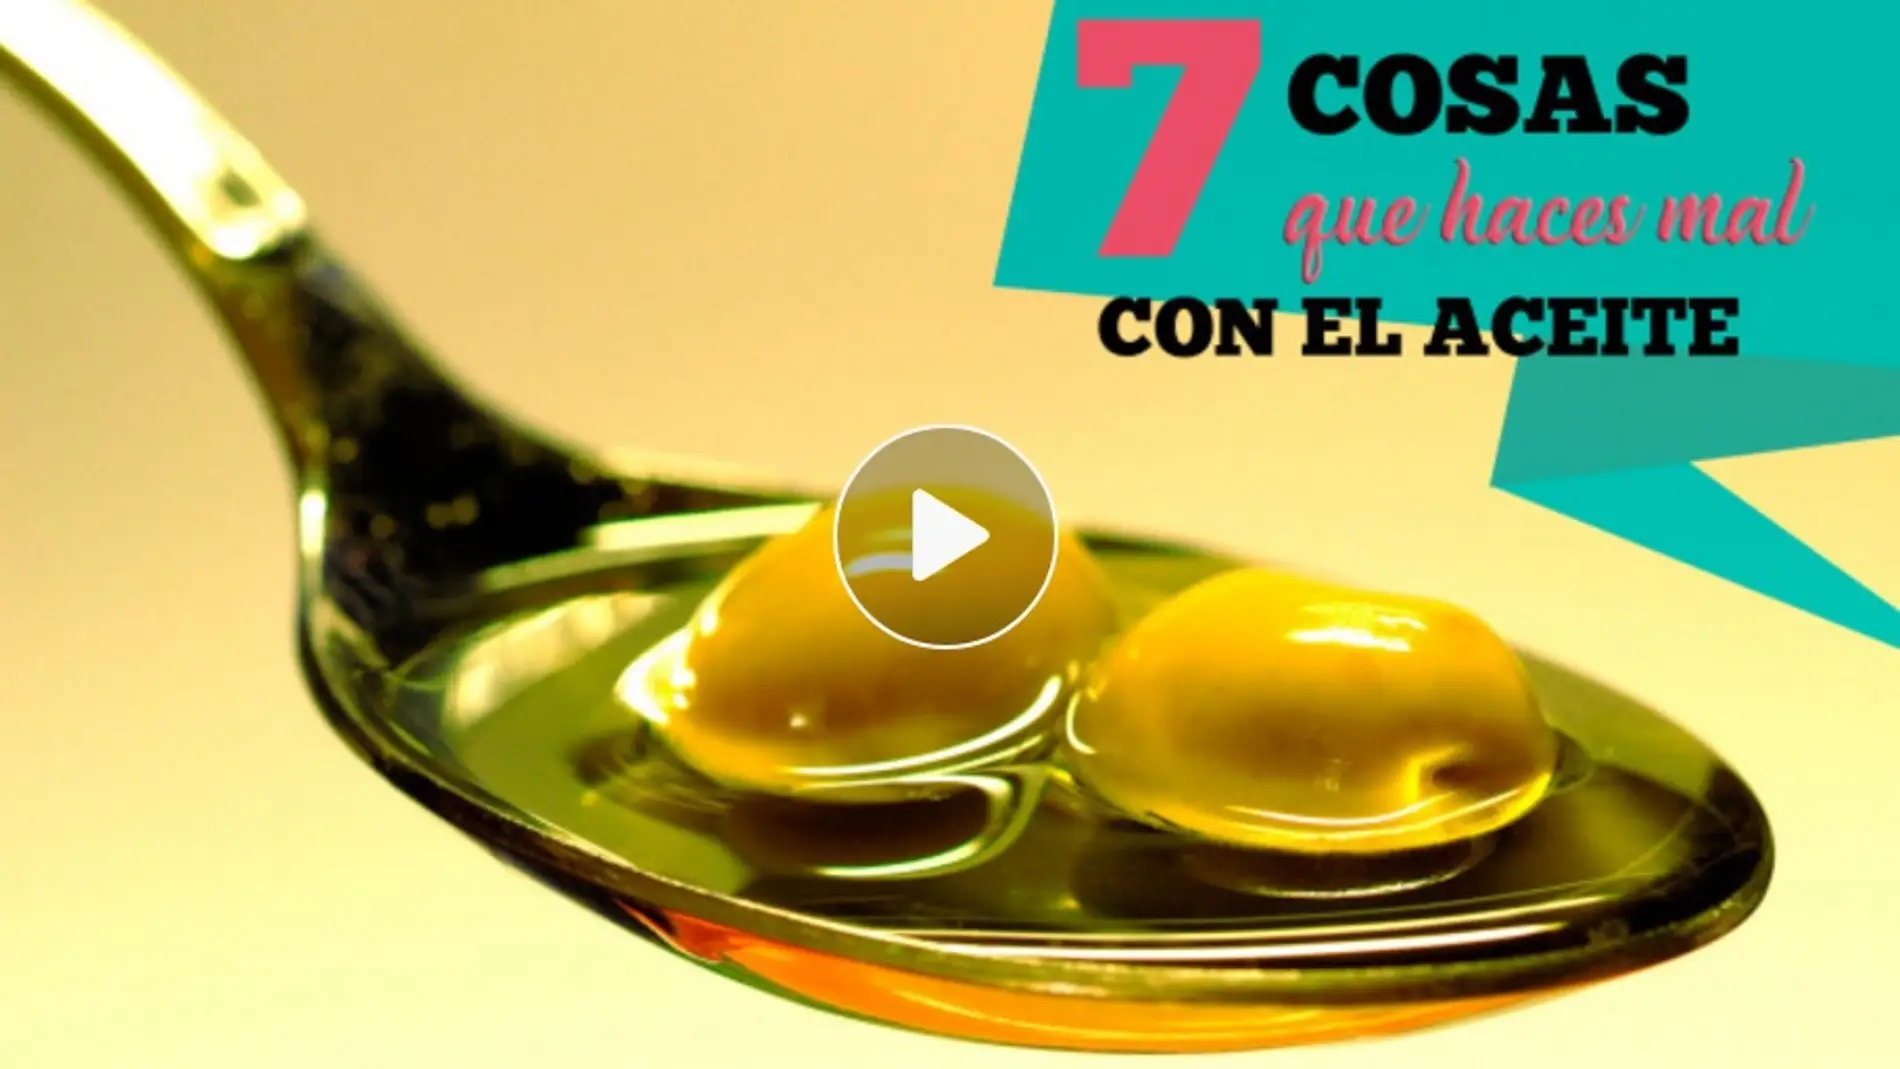 7 cosas que haces mal con el aceite